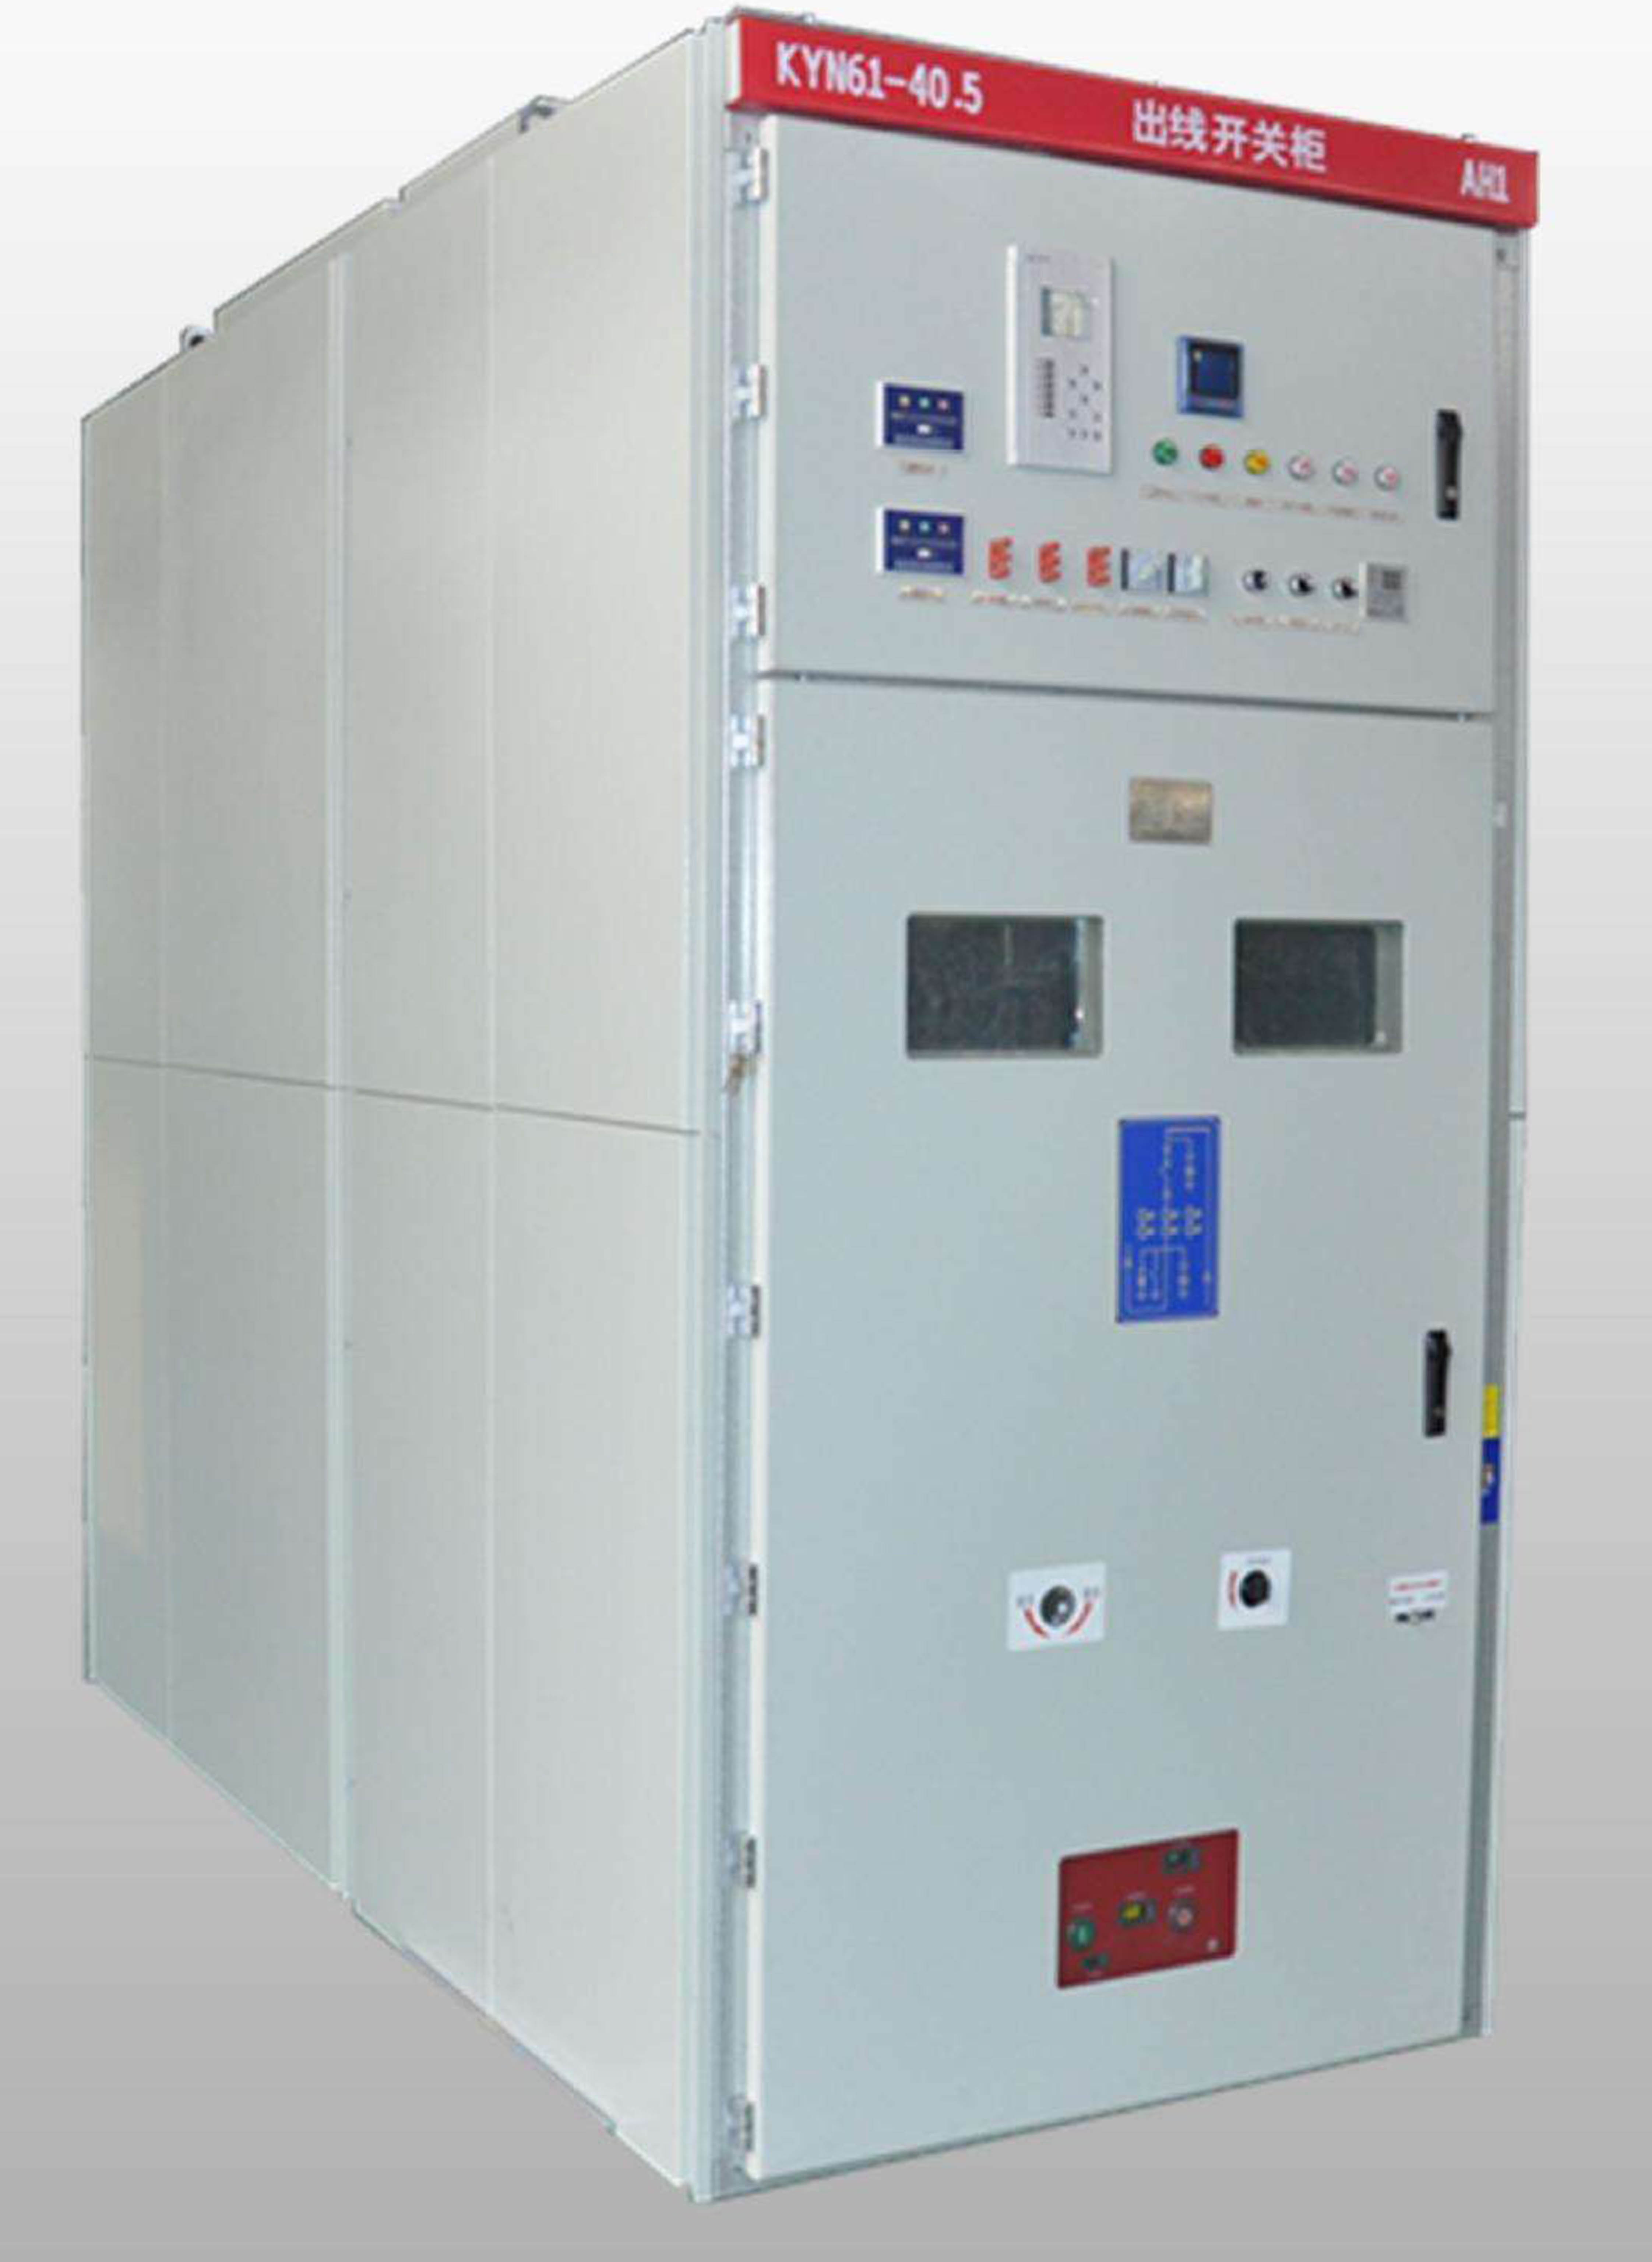 KYN61-40.5型移开式高压开关柜